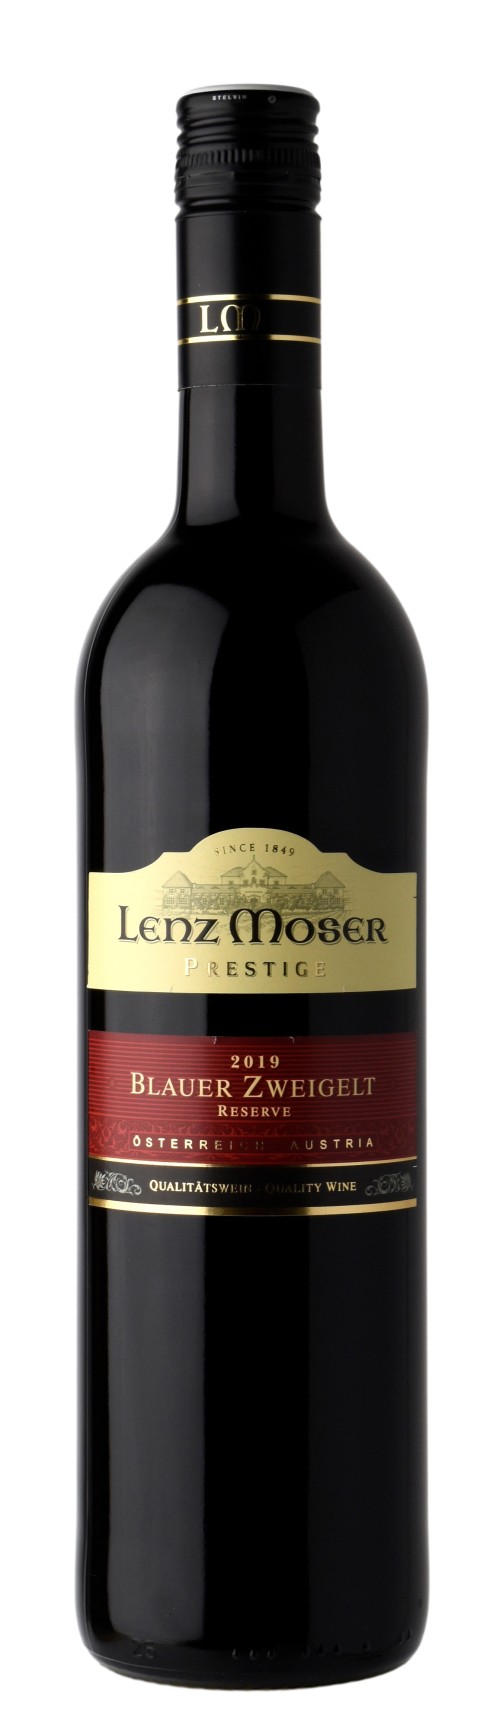 Blauer Zweigelt Reserve Prestige | Wein Guide